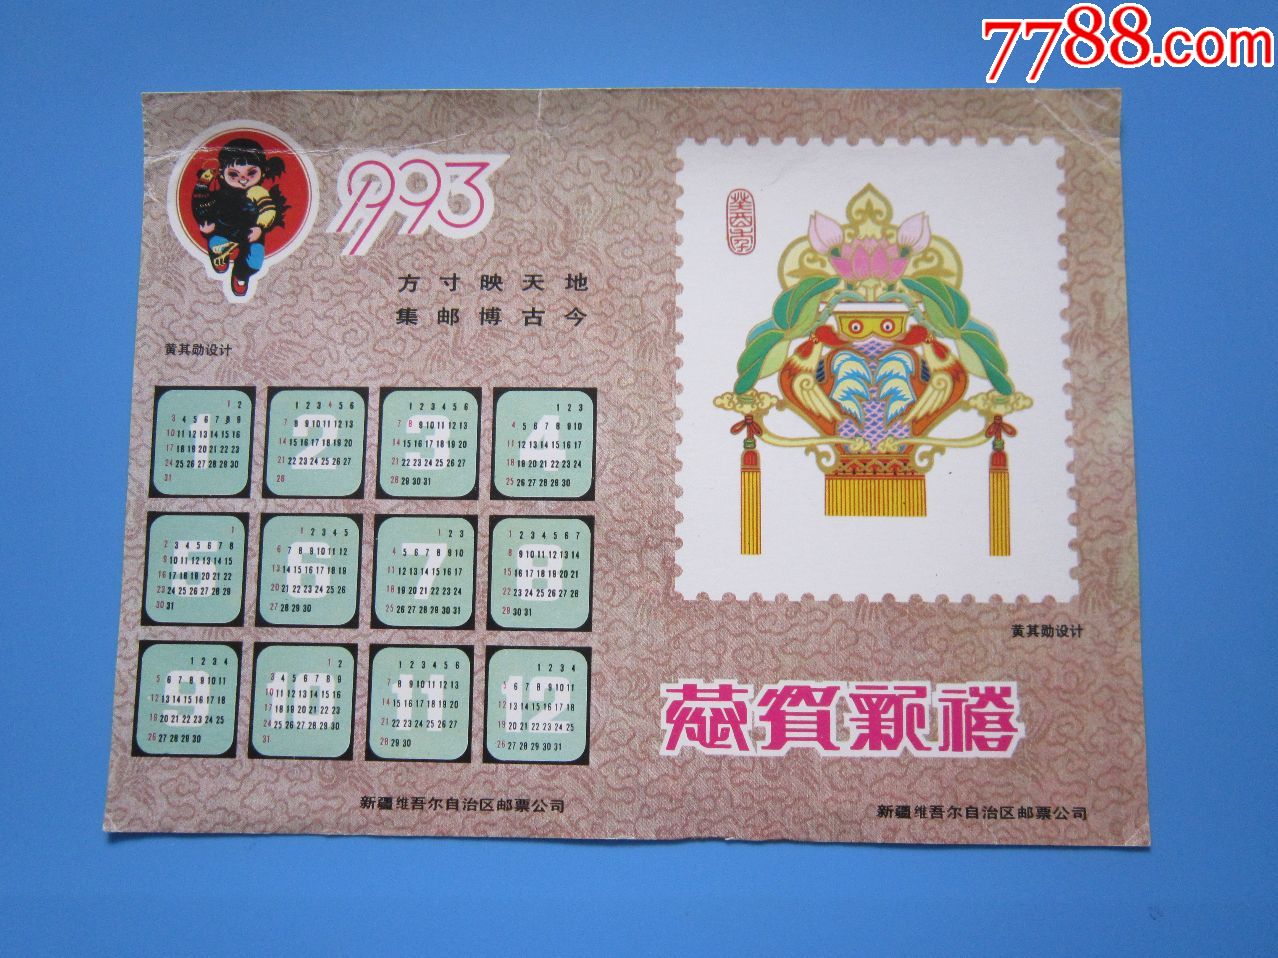 1993年邮票目录及图片图片